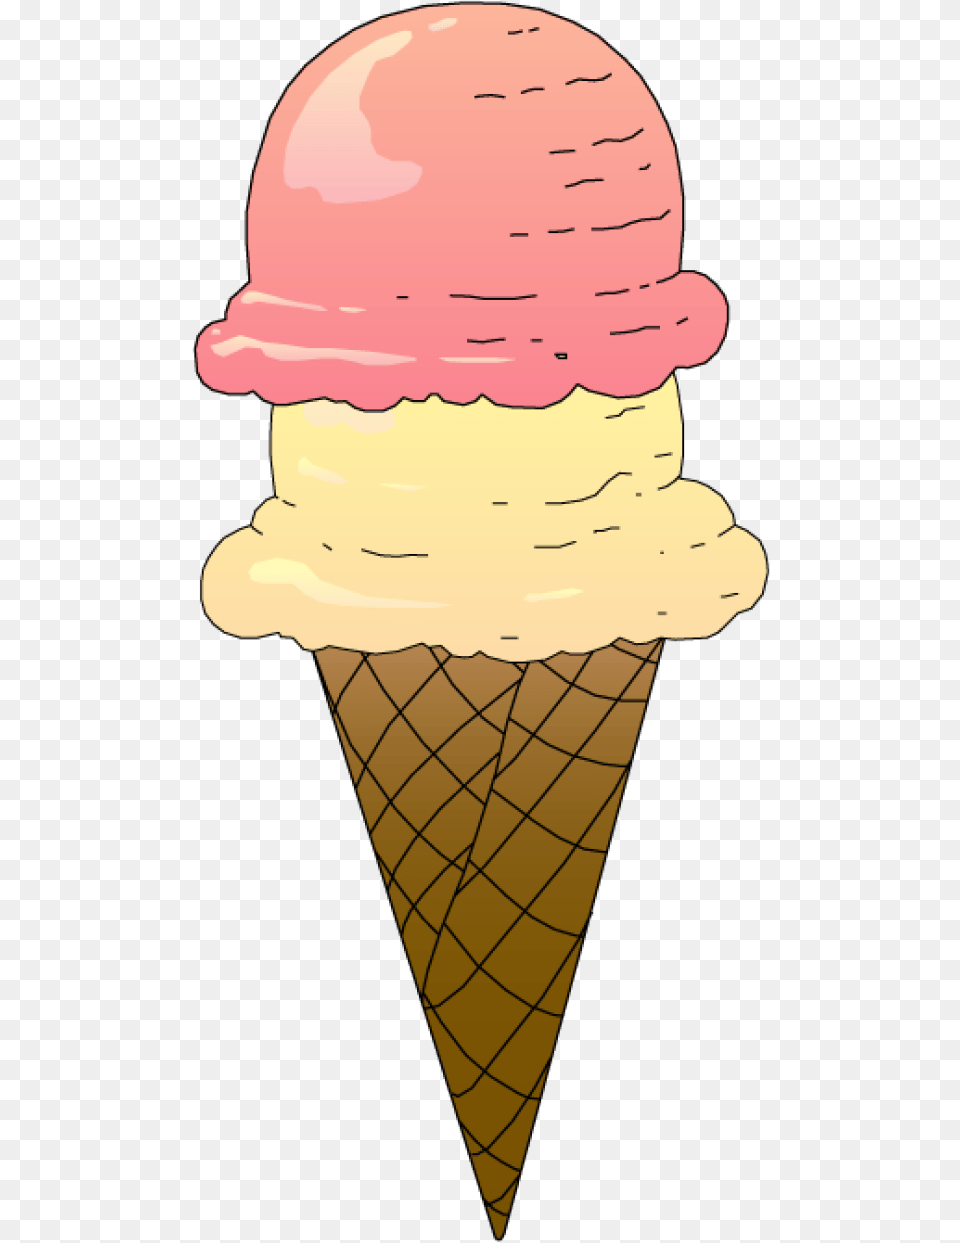 Ice Cream Cone Clipart, Dessert, Food, Ice Cream, Person Free Transparent Png